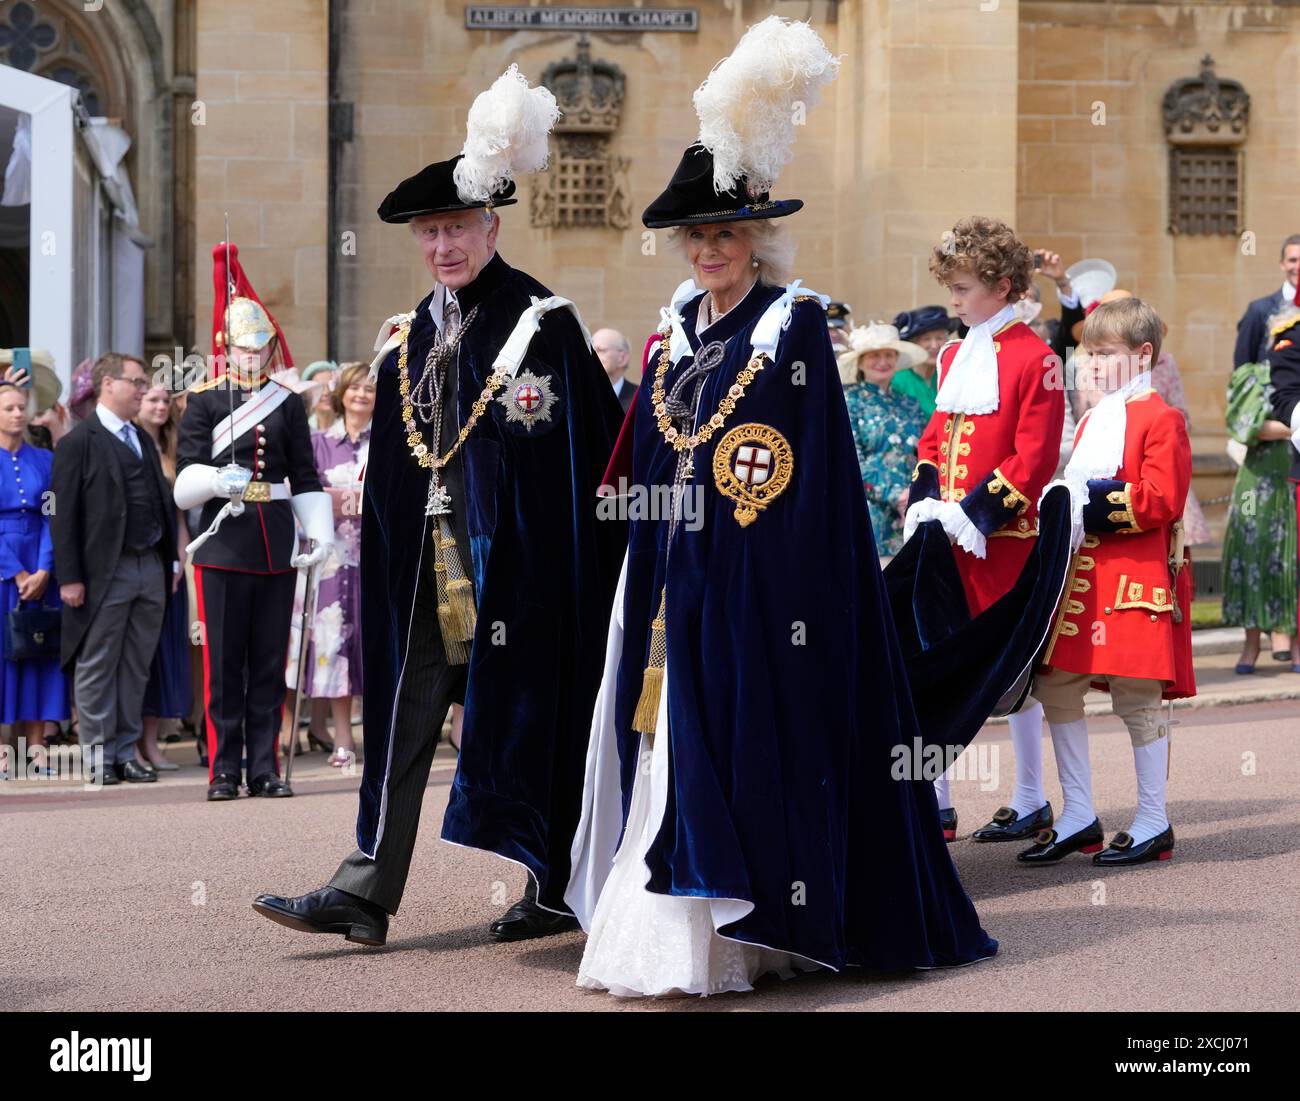 König Karl III. Und Königin Camilla kommen an, um am jährlichen Orden des Garter Service in der St. George's Chapel, Windsor Castle, Berkshire, teilzunehmen. Bilddatum: Montag, 17. Juni 2024. Stockfoto